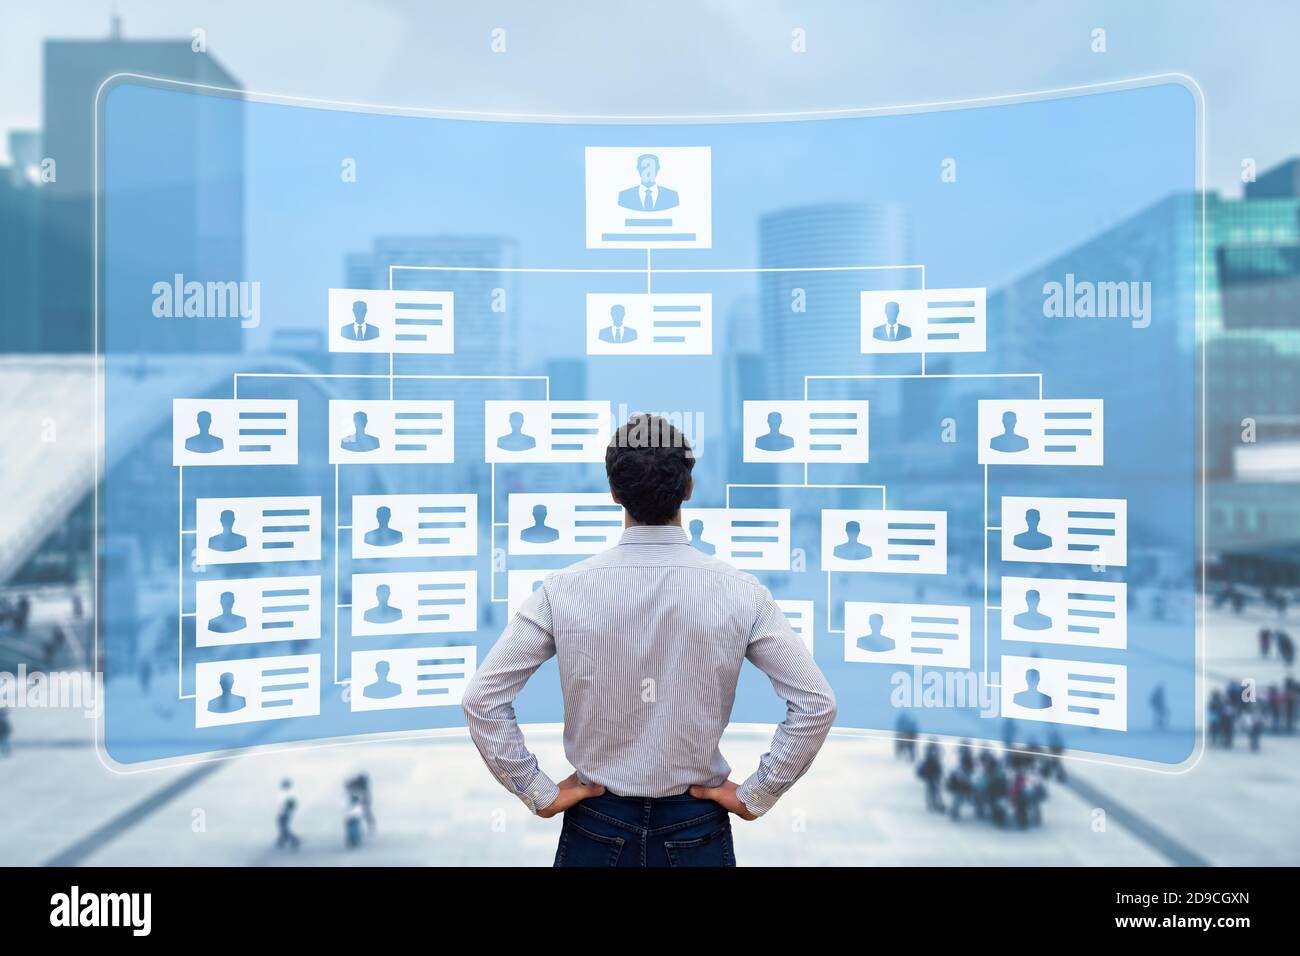 Organigramma che mostra la struttura gerarchica dei team aziendali con CEO, dirigenti, dirigenti e dipendenti. Lavoro del responsabile delle risorse umane Foto Stock